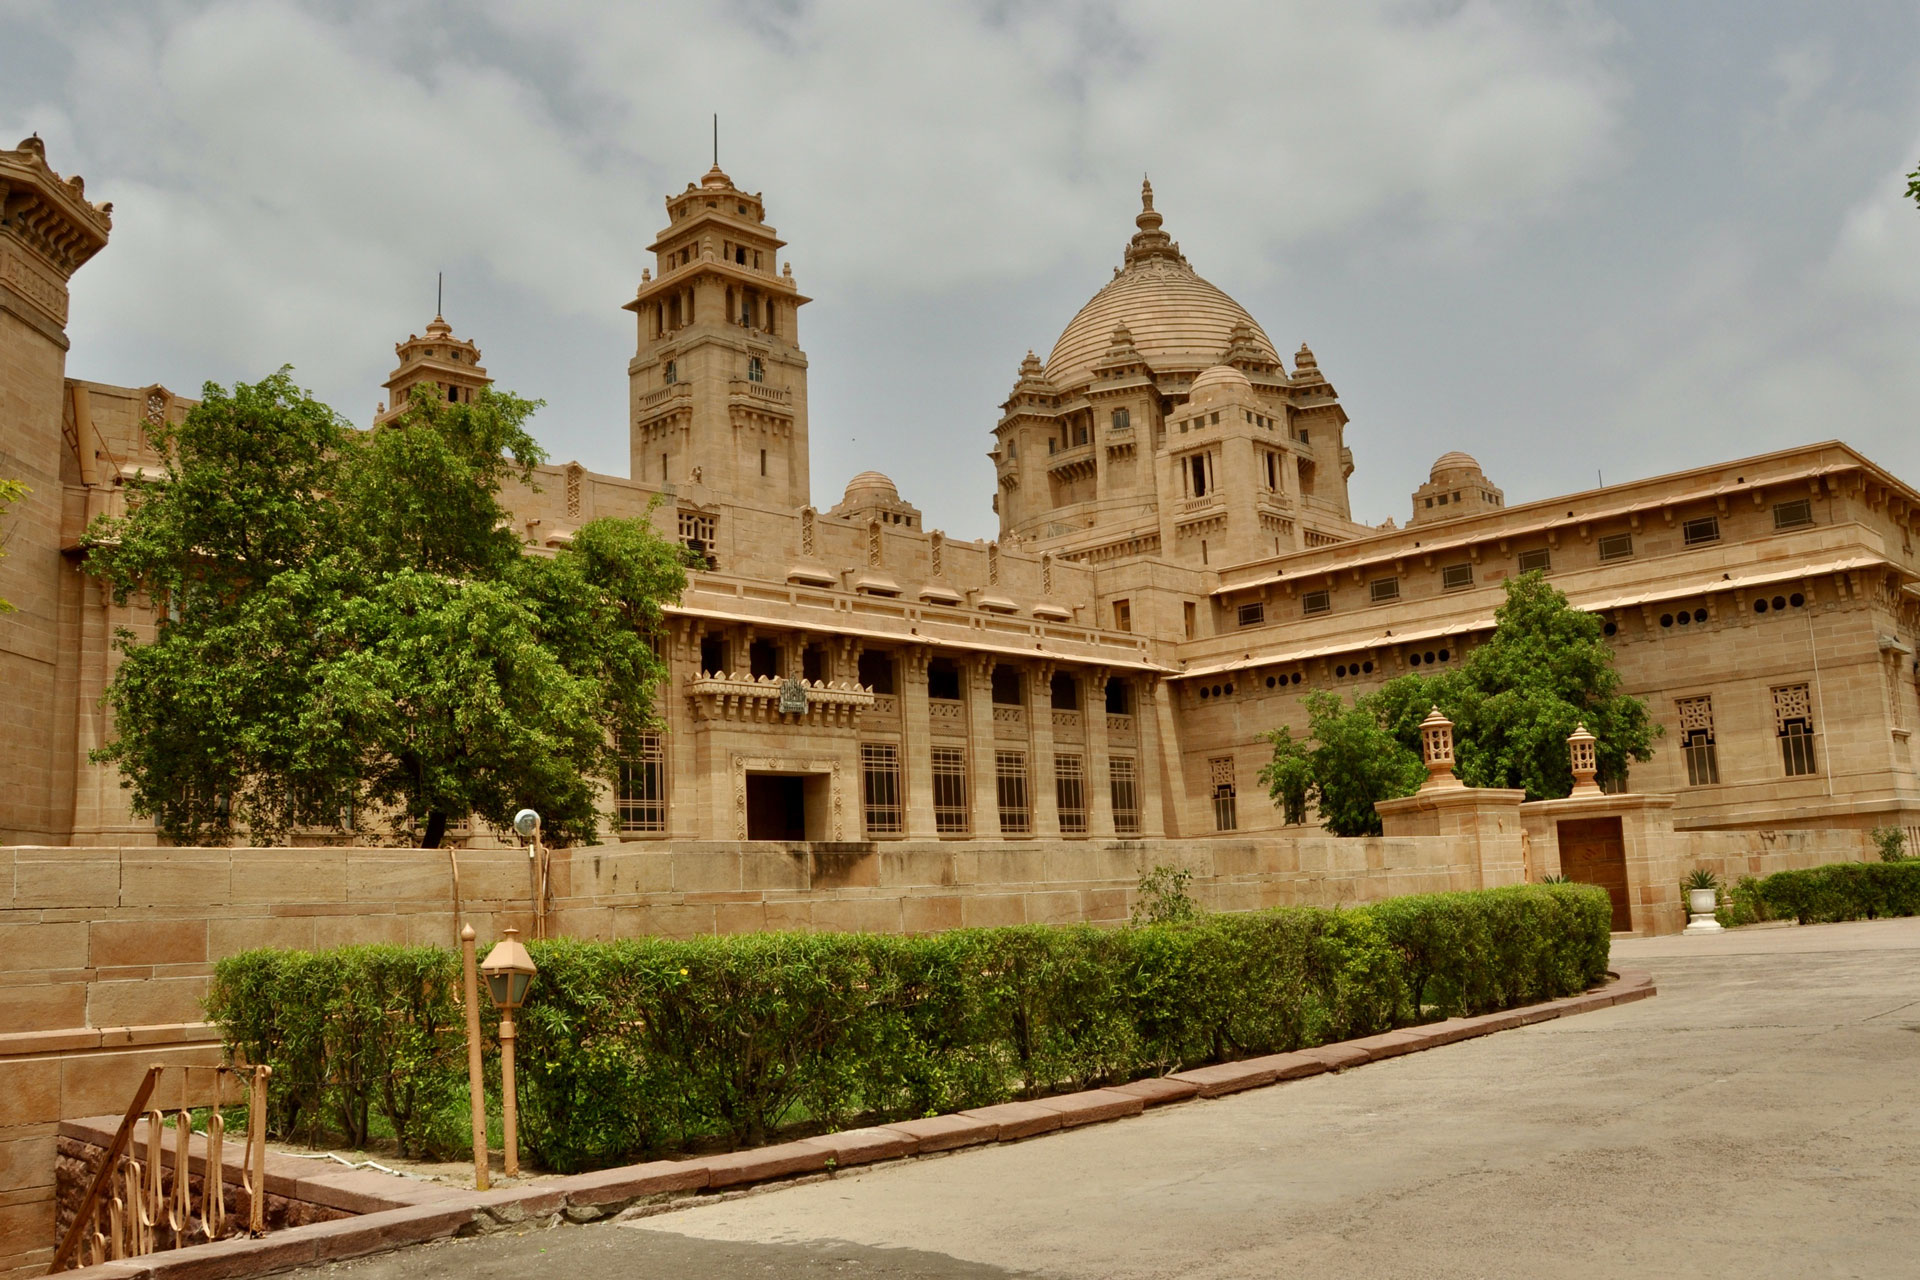 Umaid Bhawan Palace, Jodhpur